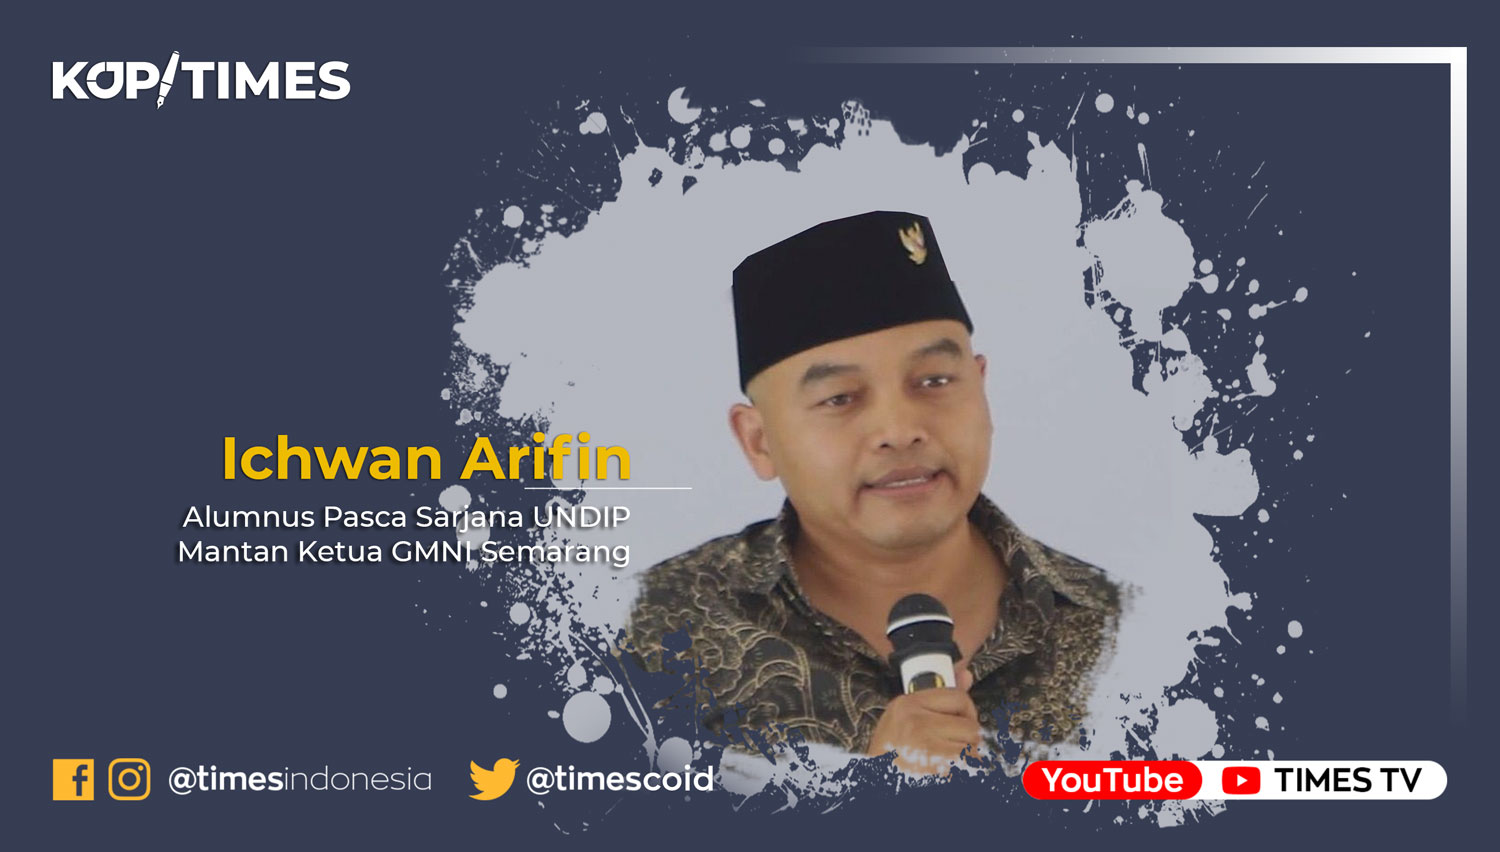 Ichwan Arifin adalah Alumnus Pasca Sarjana UNDIP. Mantan Ketua GMNI Semarang